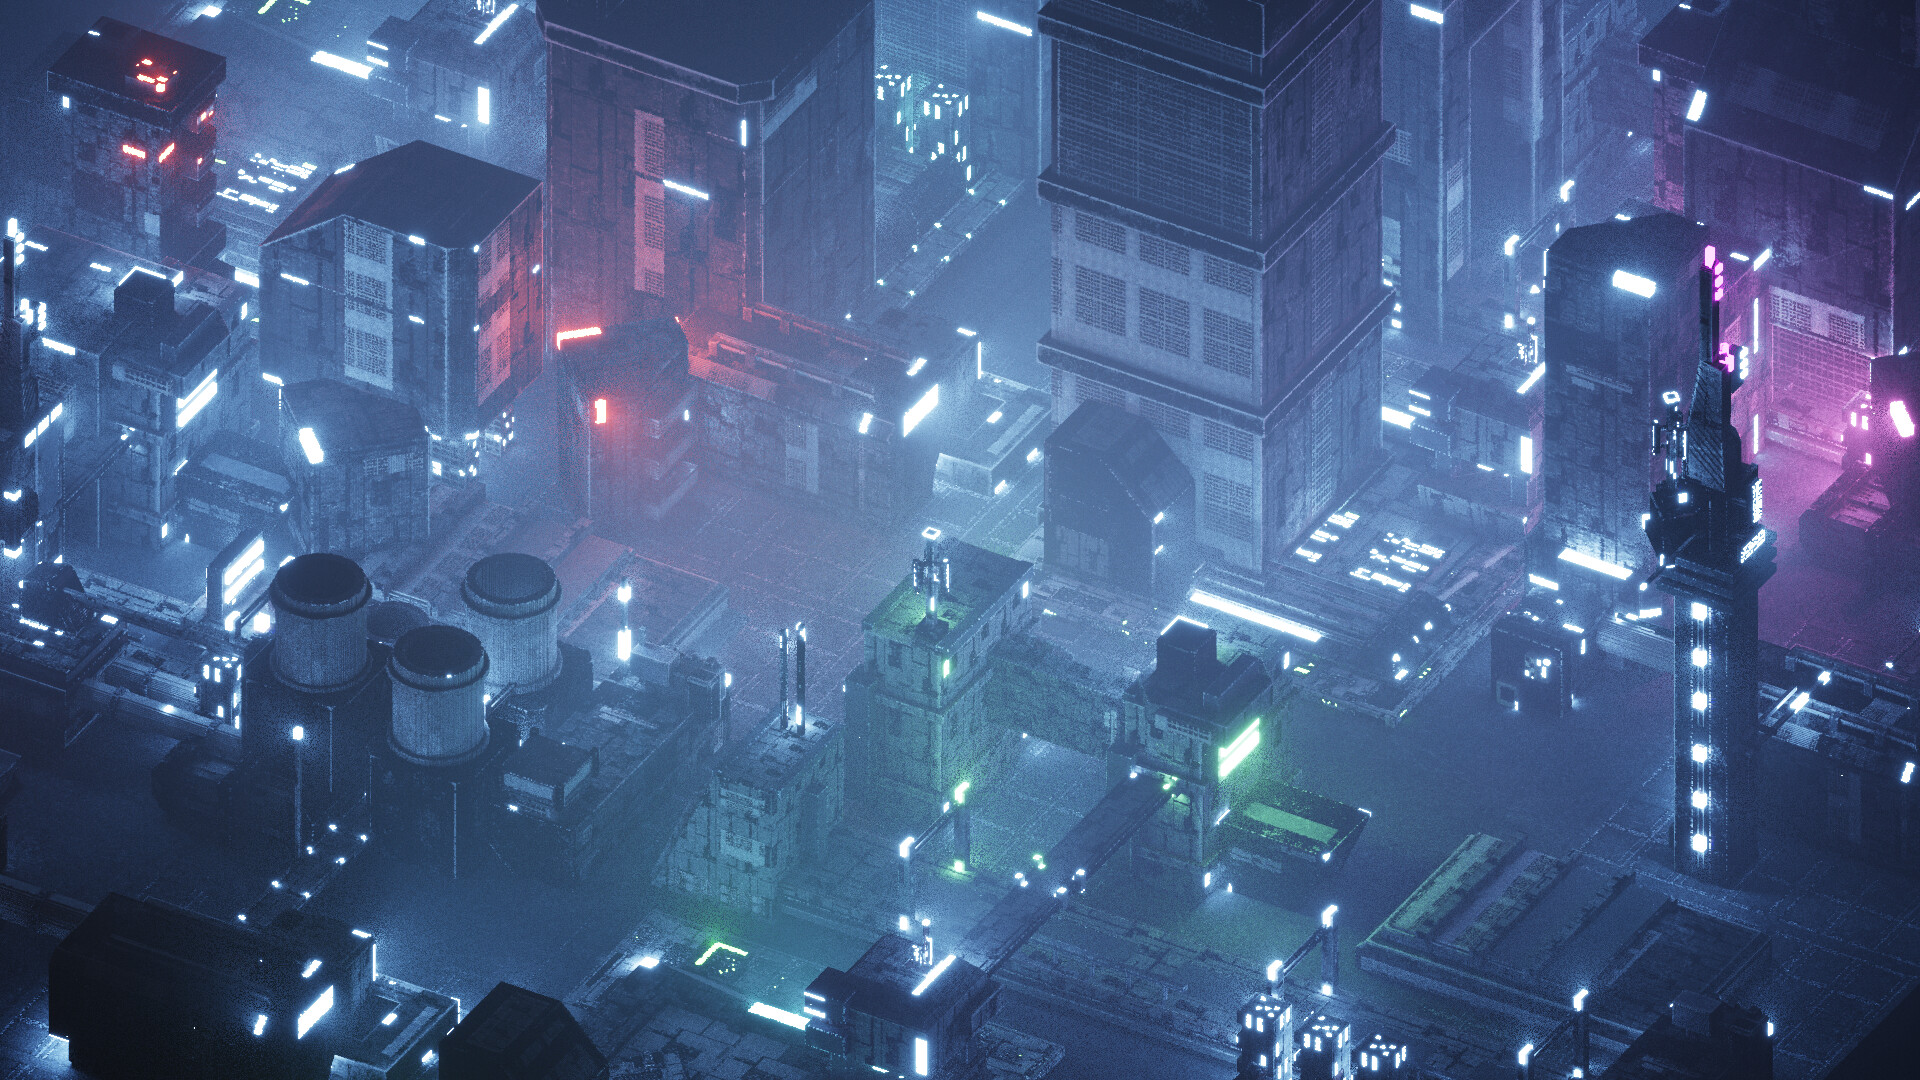 Cyberpunk night city minecraft фото 115